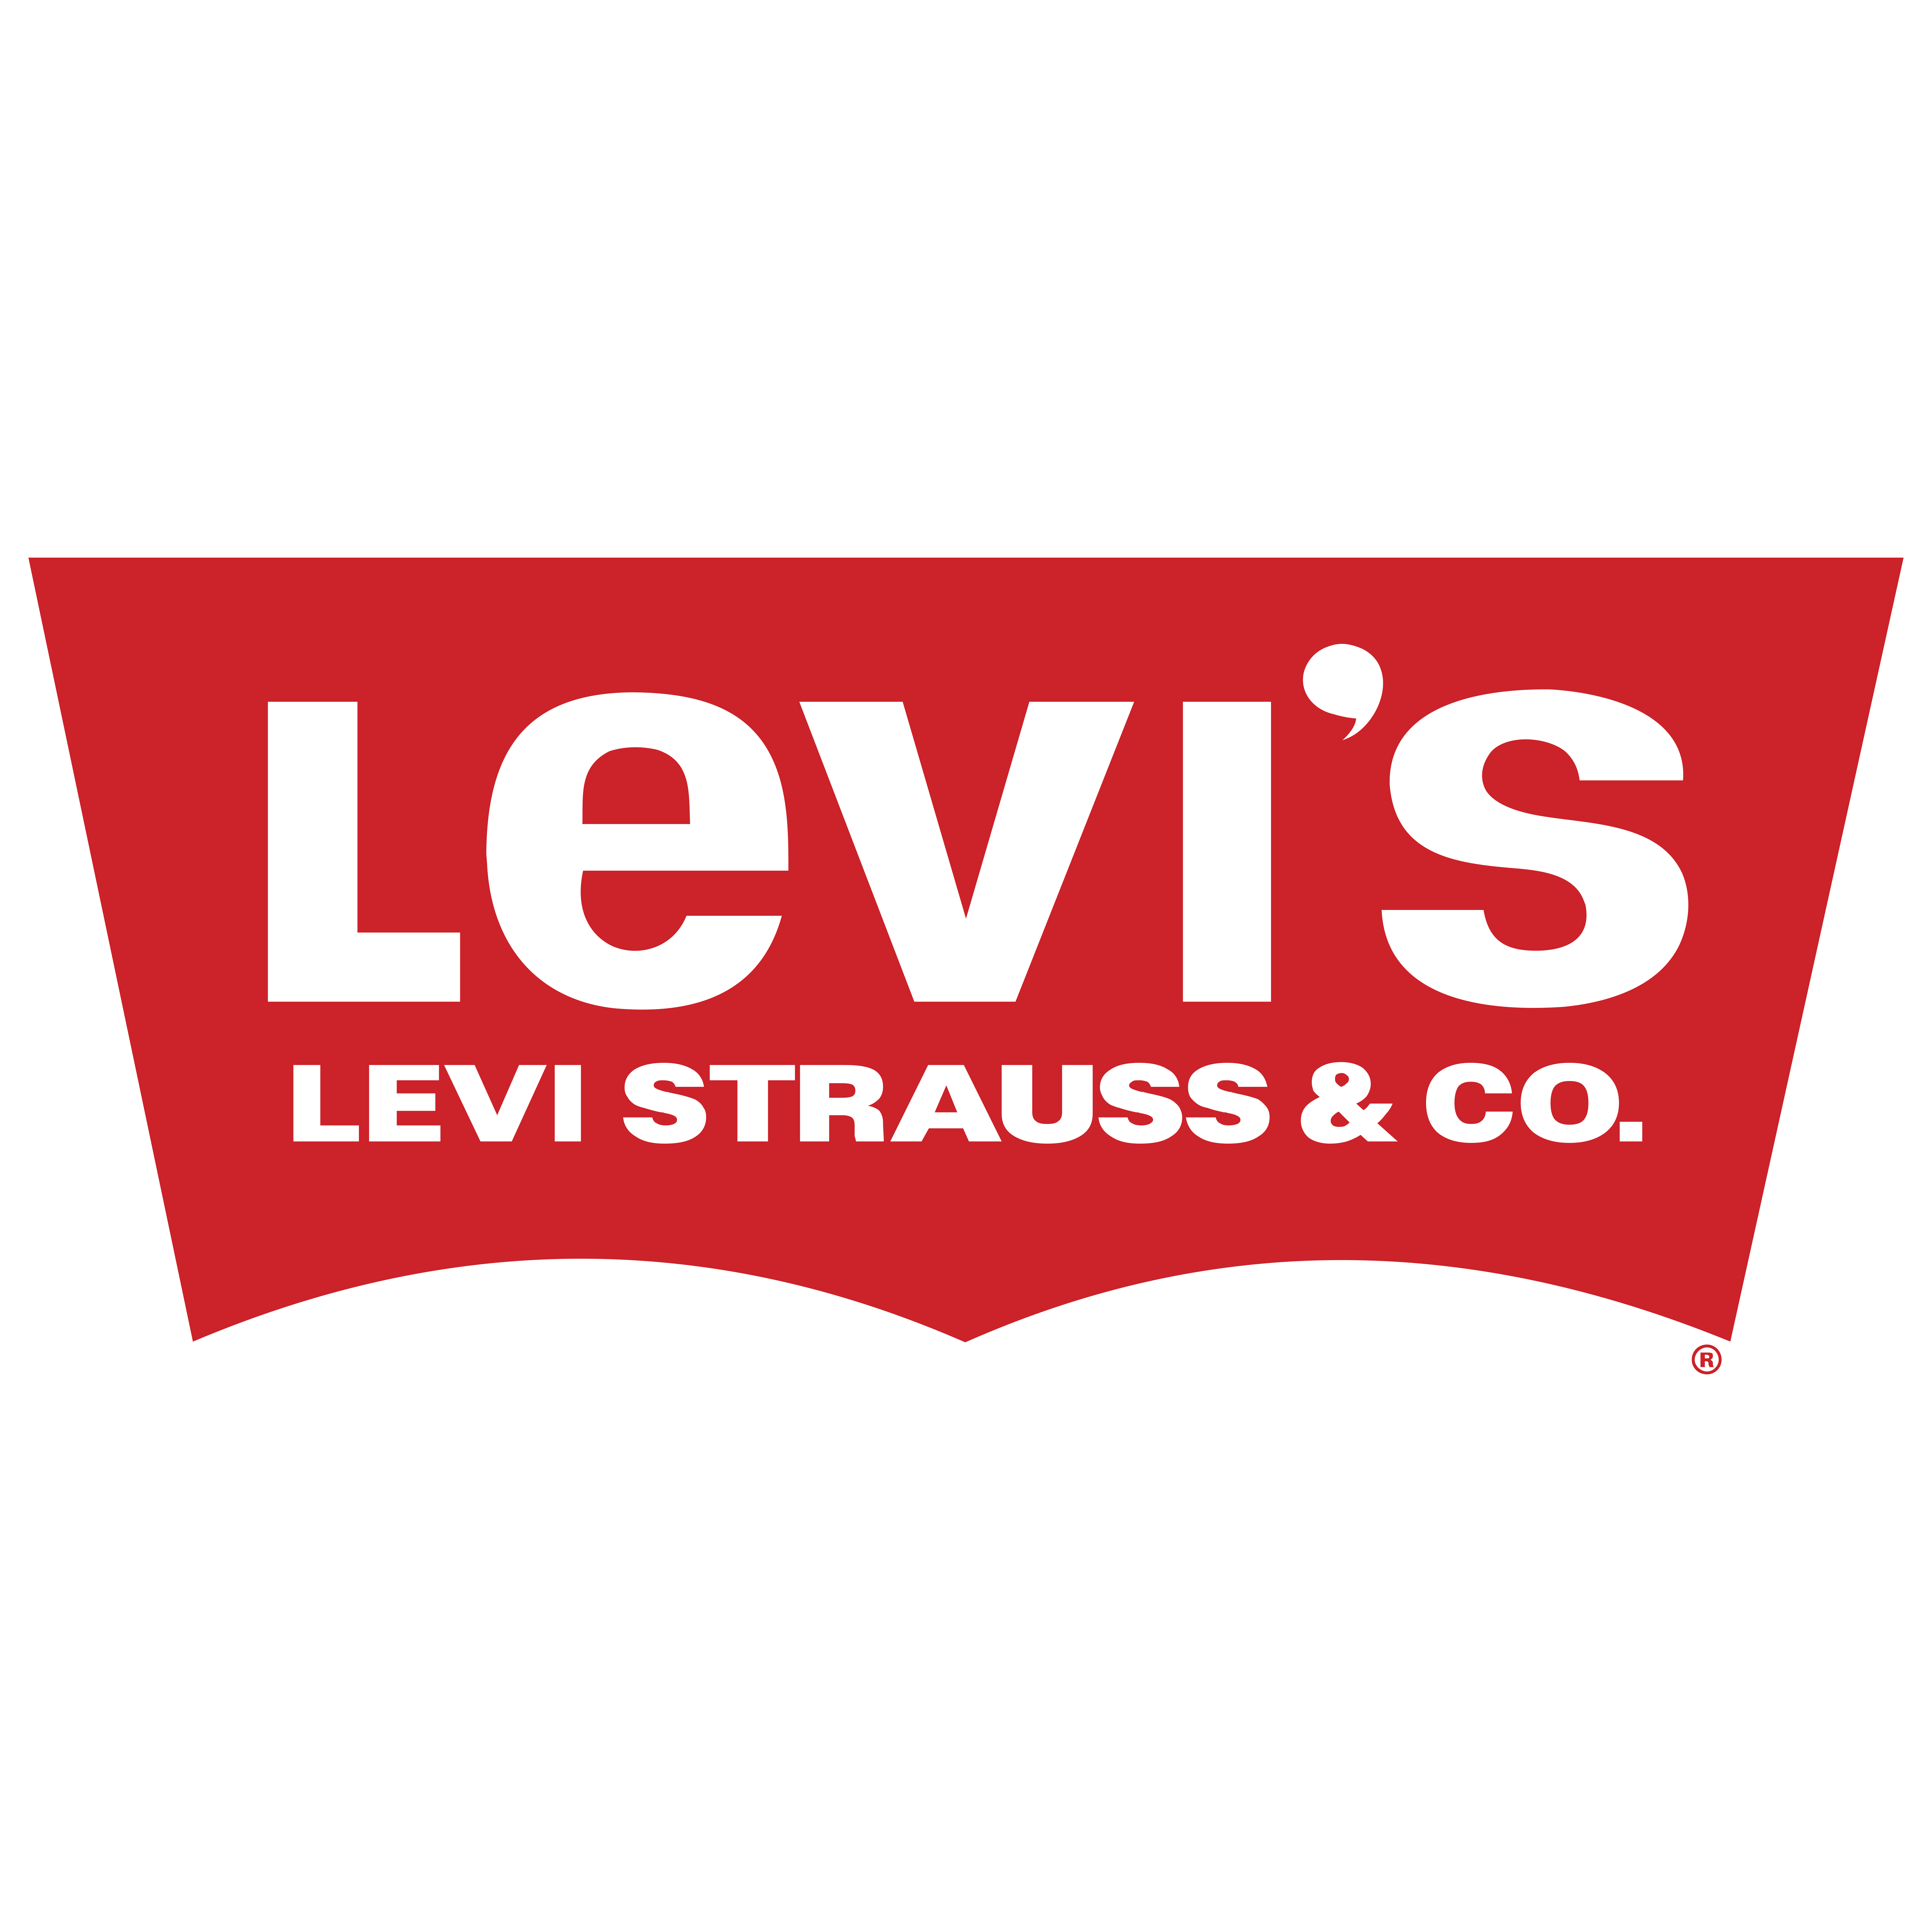 Лев ис. Levis логотип бренд. Levis logo 2021. Levis Strauss logo vector. Levi Strauss 501 лого.